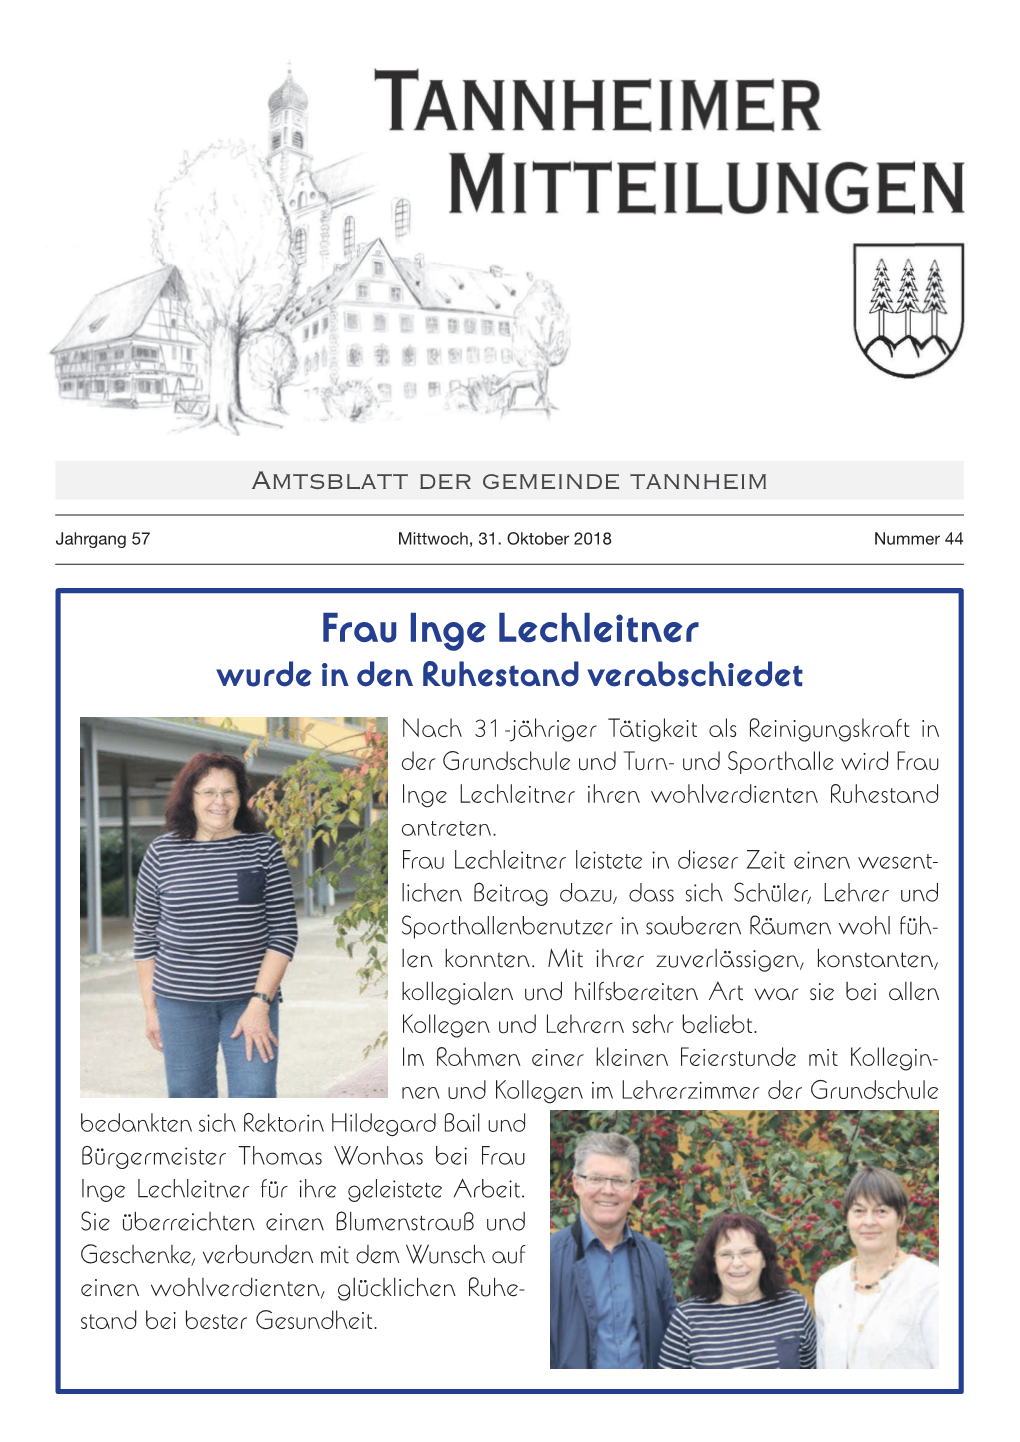 Frau Inge Lechleitner